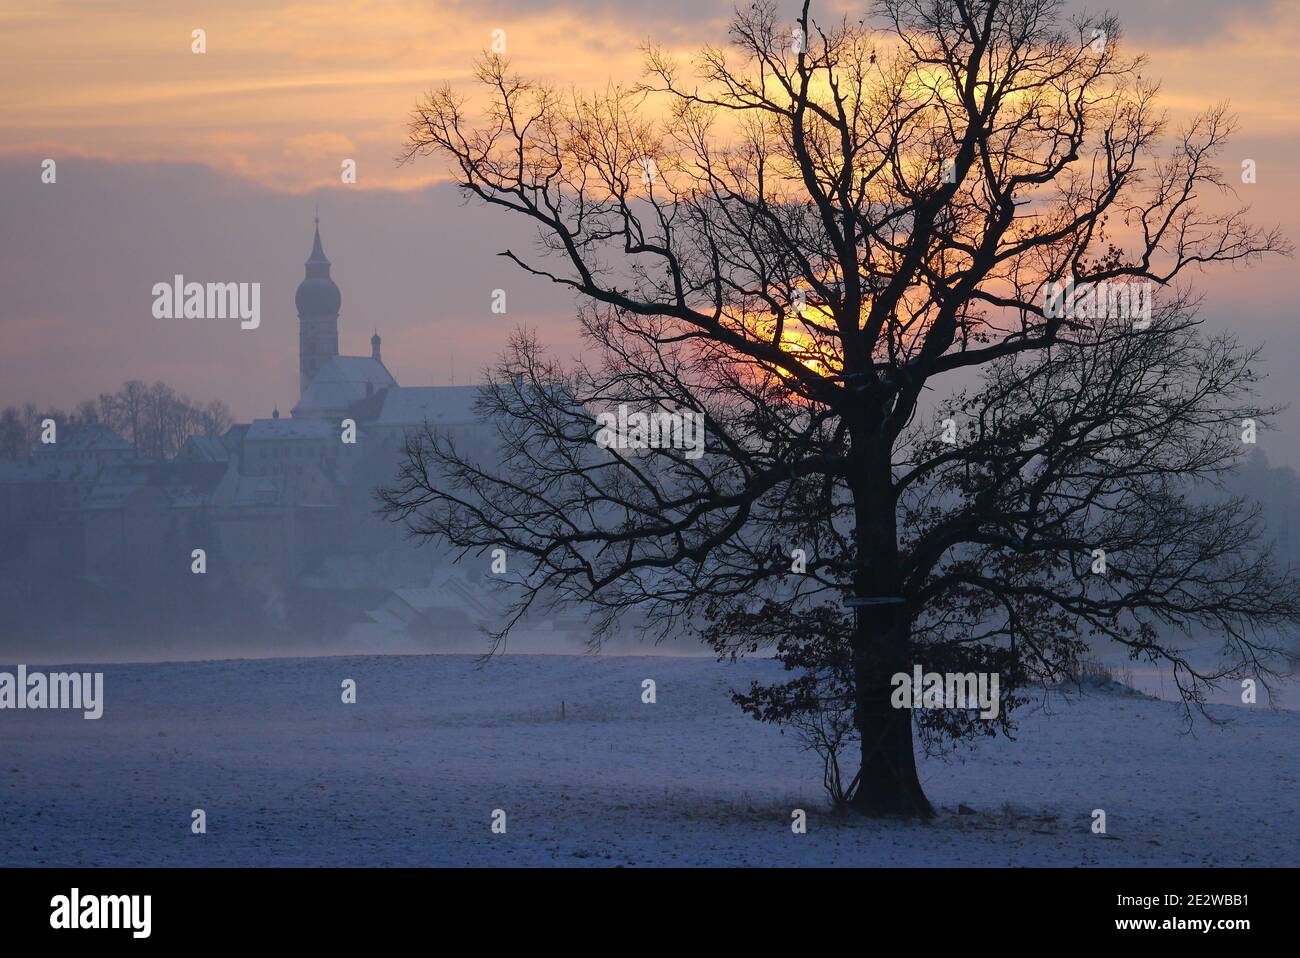 L'abbaye d'Andechs (Kloster Andechs) dans le brouillard au coucher du soleil, avec la silhouette d'un arbre au premier plan Banque D'Images